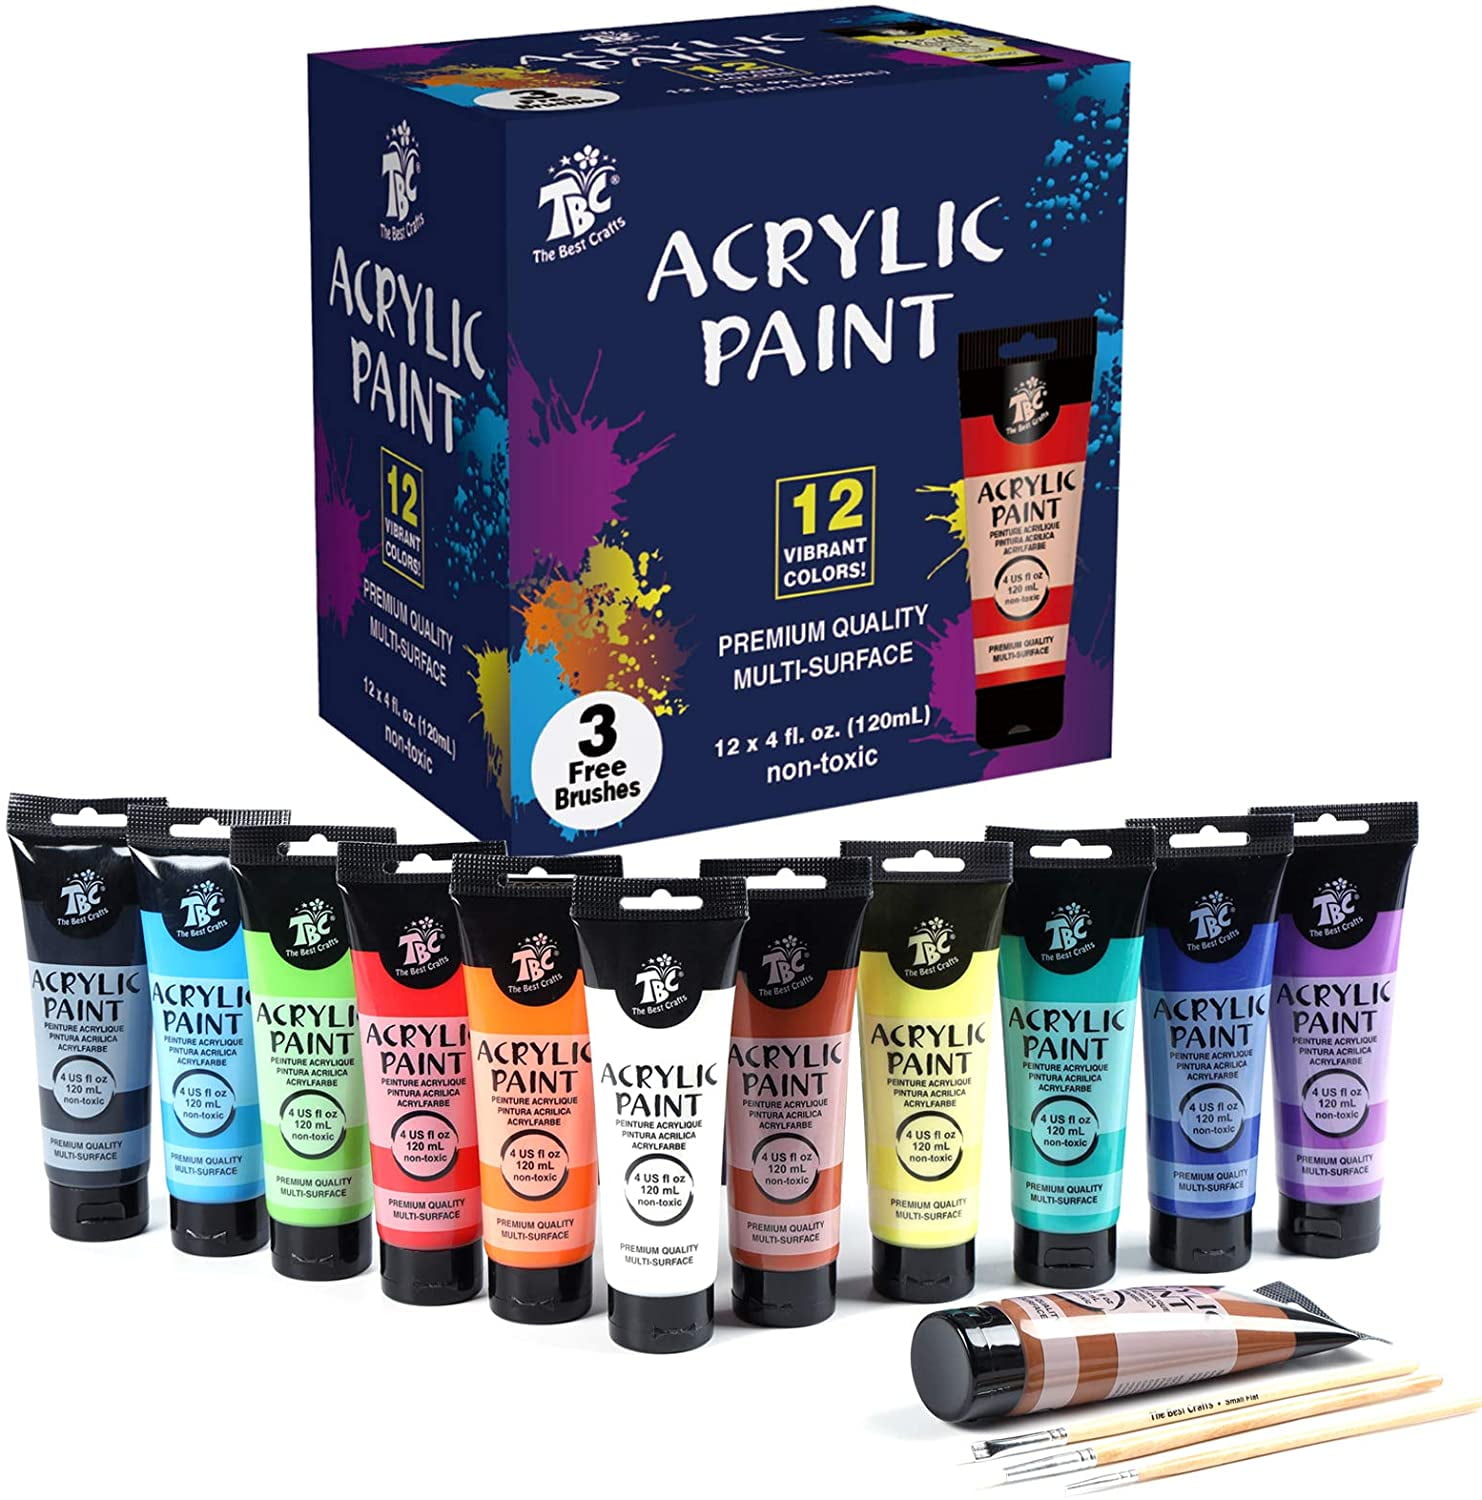 Castle Art Supplies Acrylic Paint Set - 48 Vibrant Colors with Larger